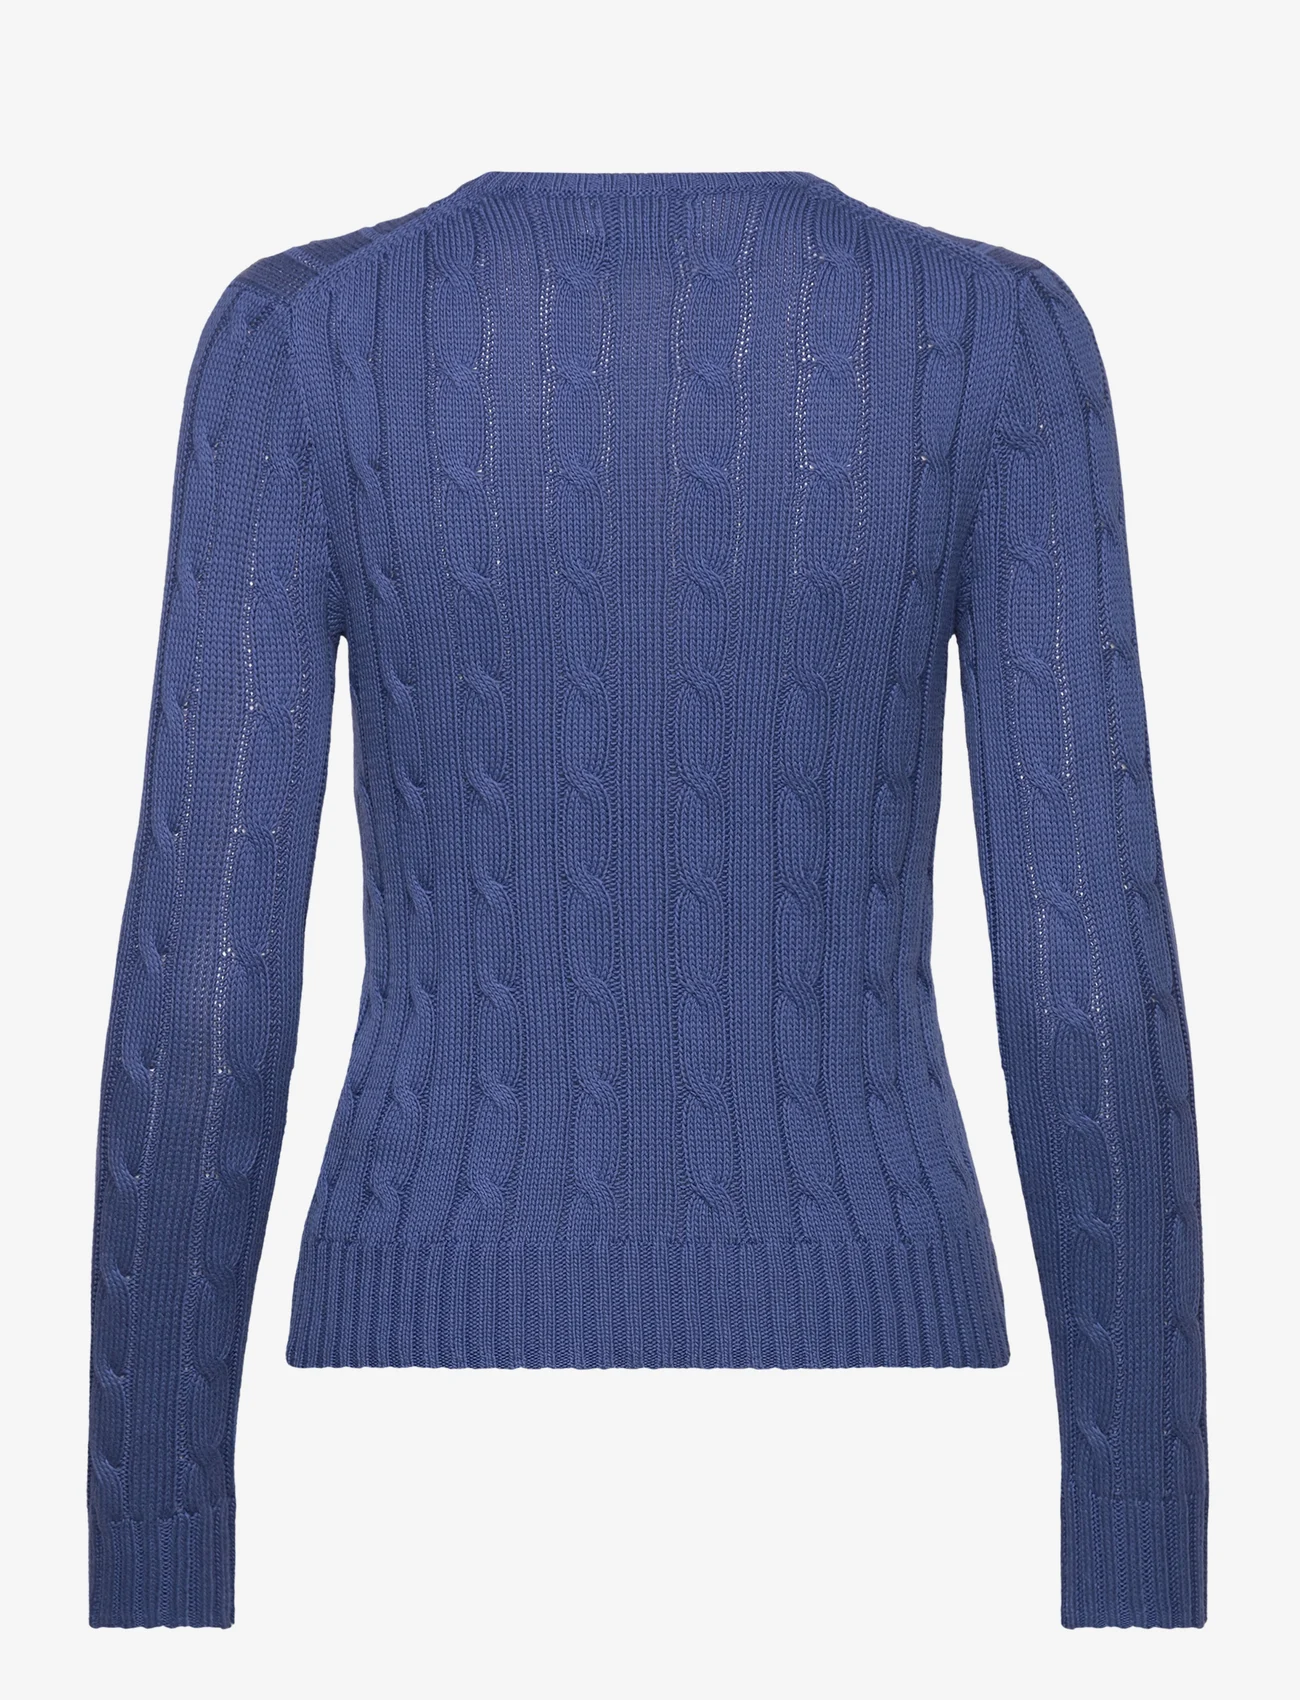 Polo Ralph Lauren - Cable-Knit Cotton Crewneck Sweater - džemperiai - gem blue - 1